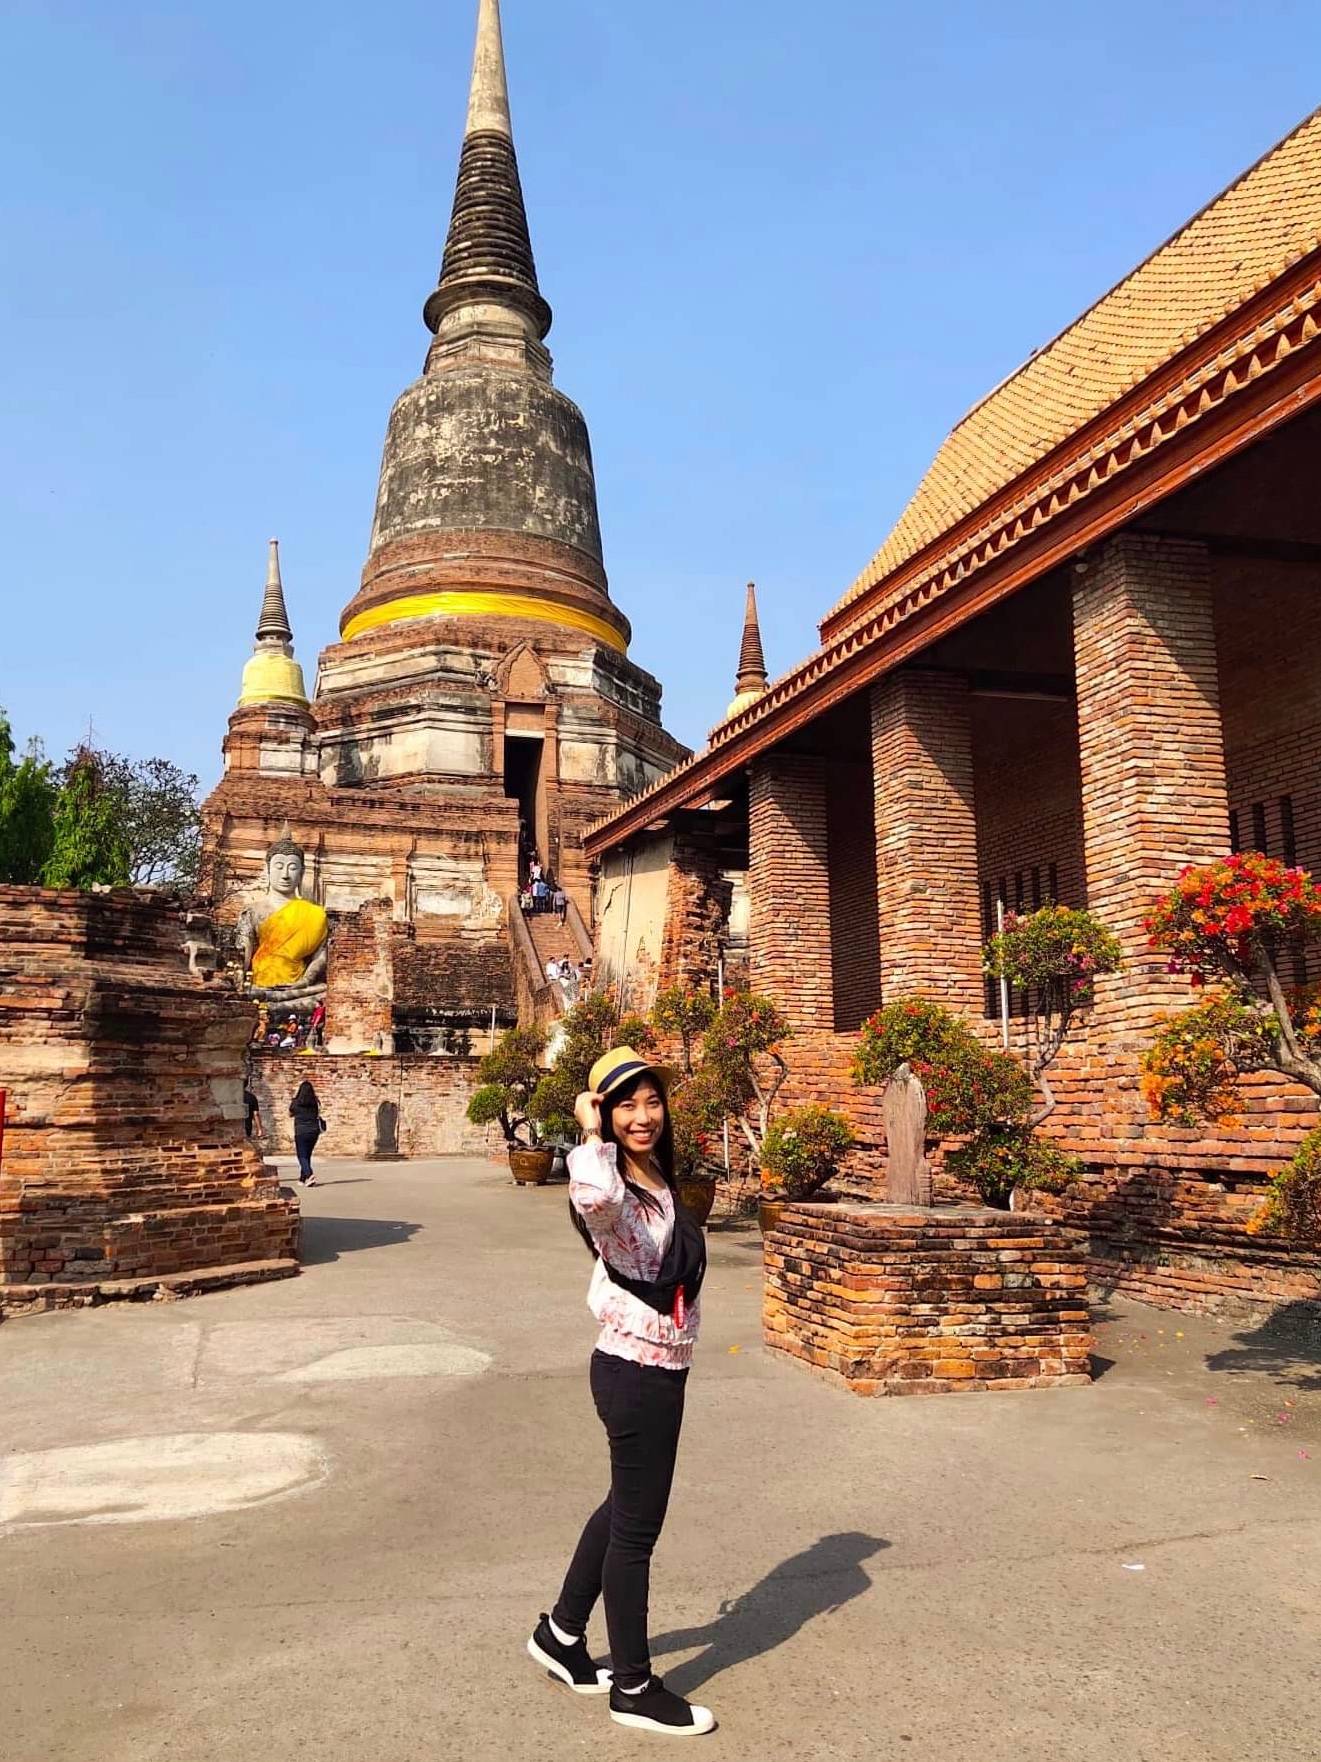 UNESCO World Heritage City: Wat Yai Chai Monkhon